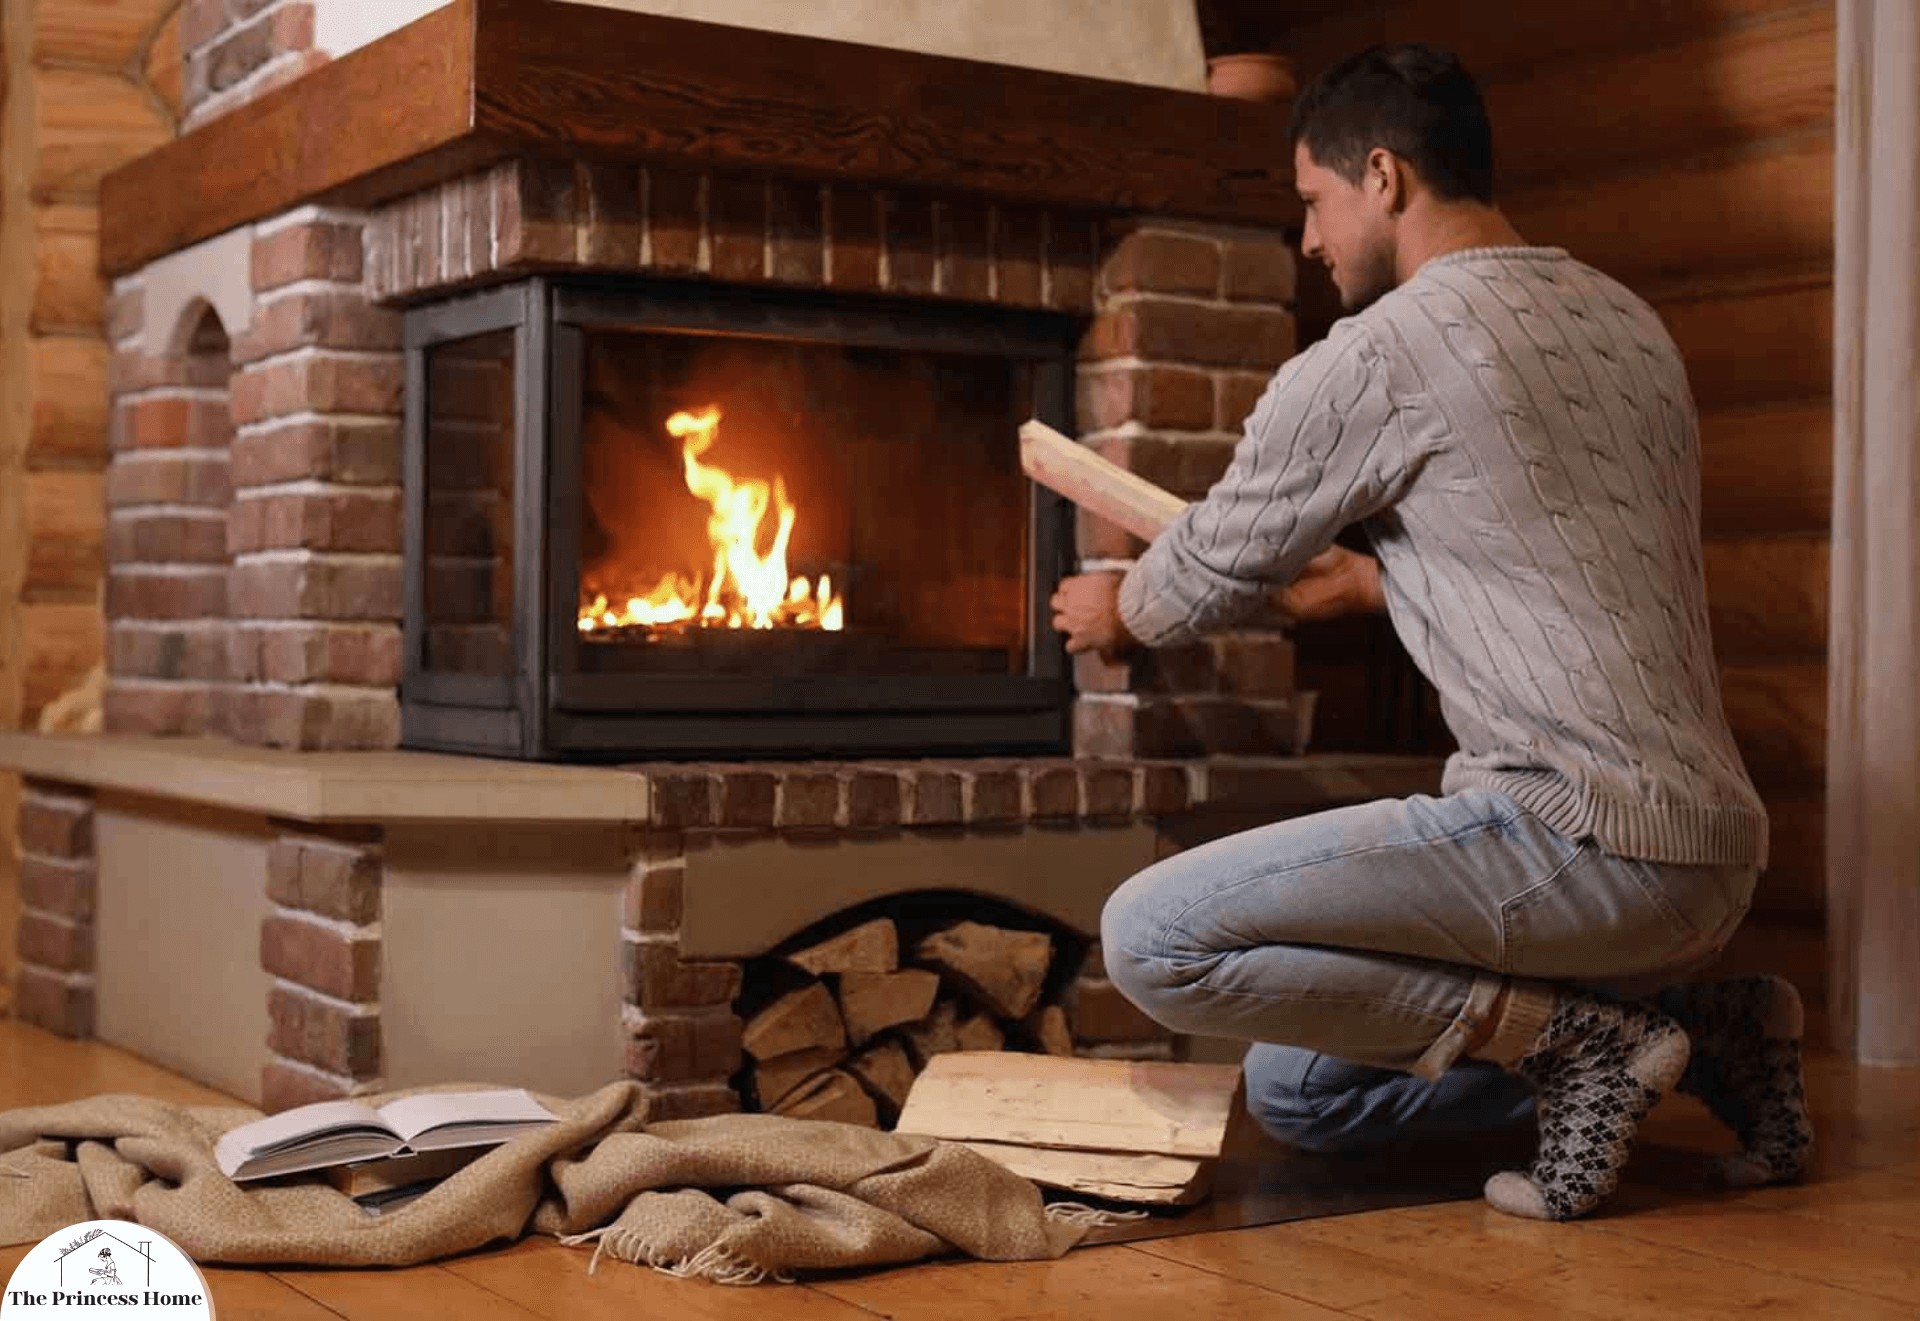 1.Wood-Burning Fireplaces: